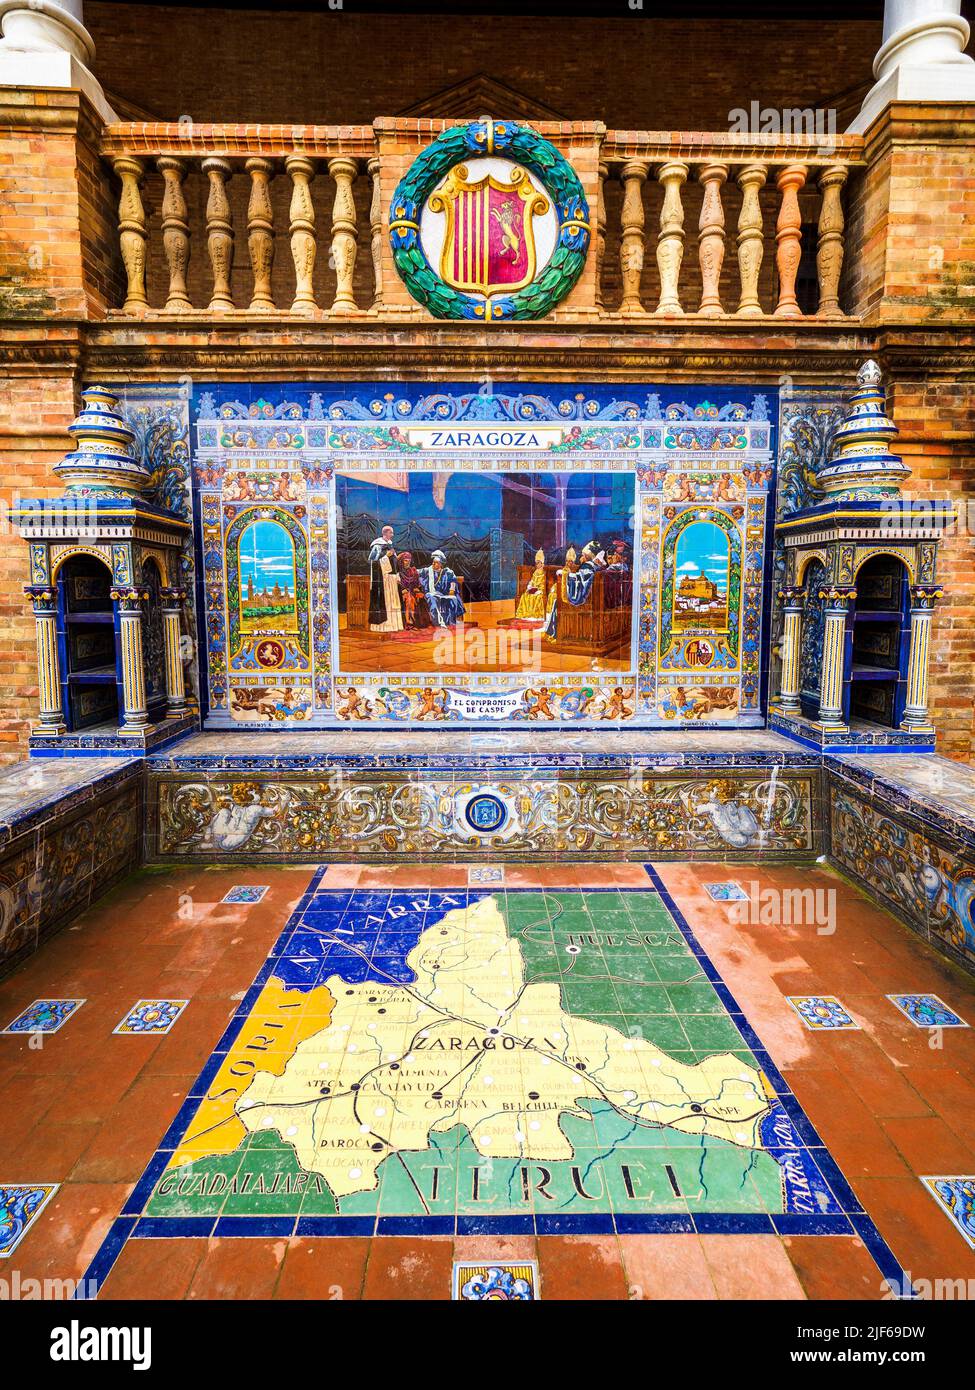 Detalle de la provincia española de zargoza a lo largo de las paredes del edificio de la Plaza de España - Sevilla, España Foto de stock